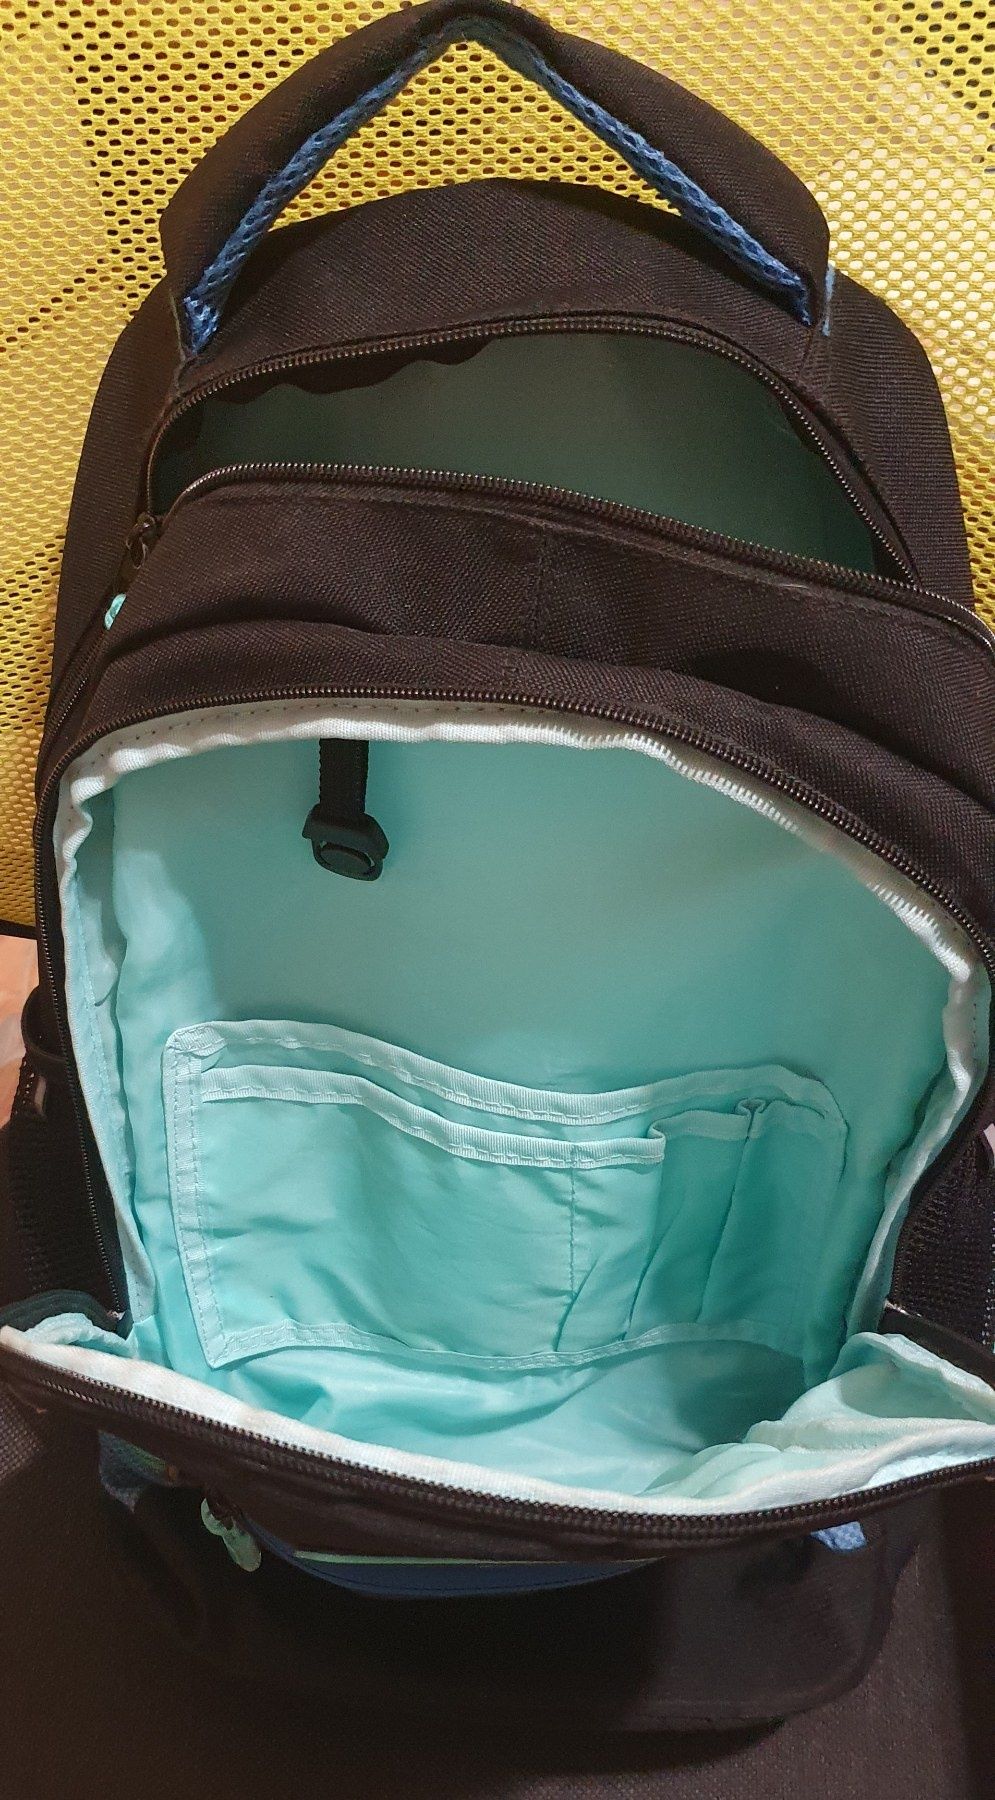 Продам ортопедический рюкзак для подростка кайт (kite sport)